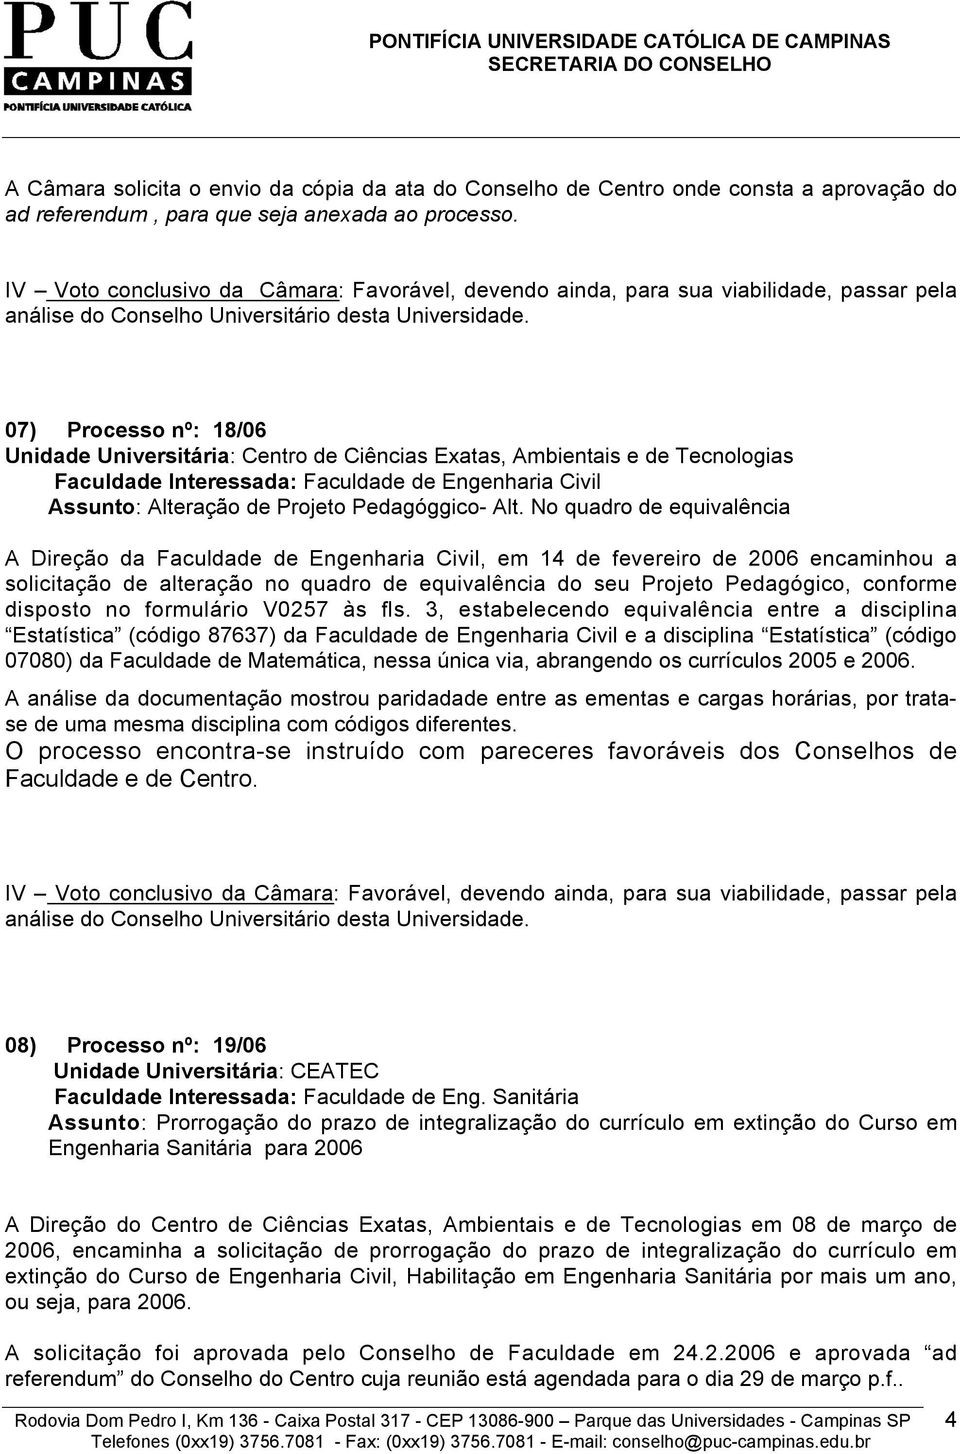 07) Processo nº: 18/06 Faculdade Interessada: Faculdade de Engenharia Civil Assunto: Alteração de Projeto Pedagóggico- Alt.